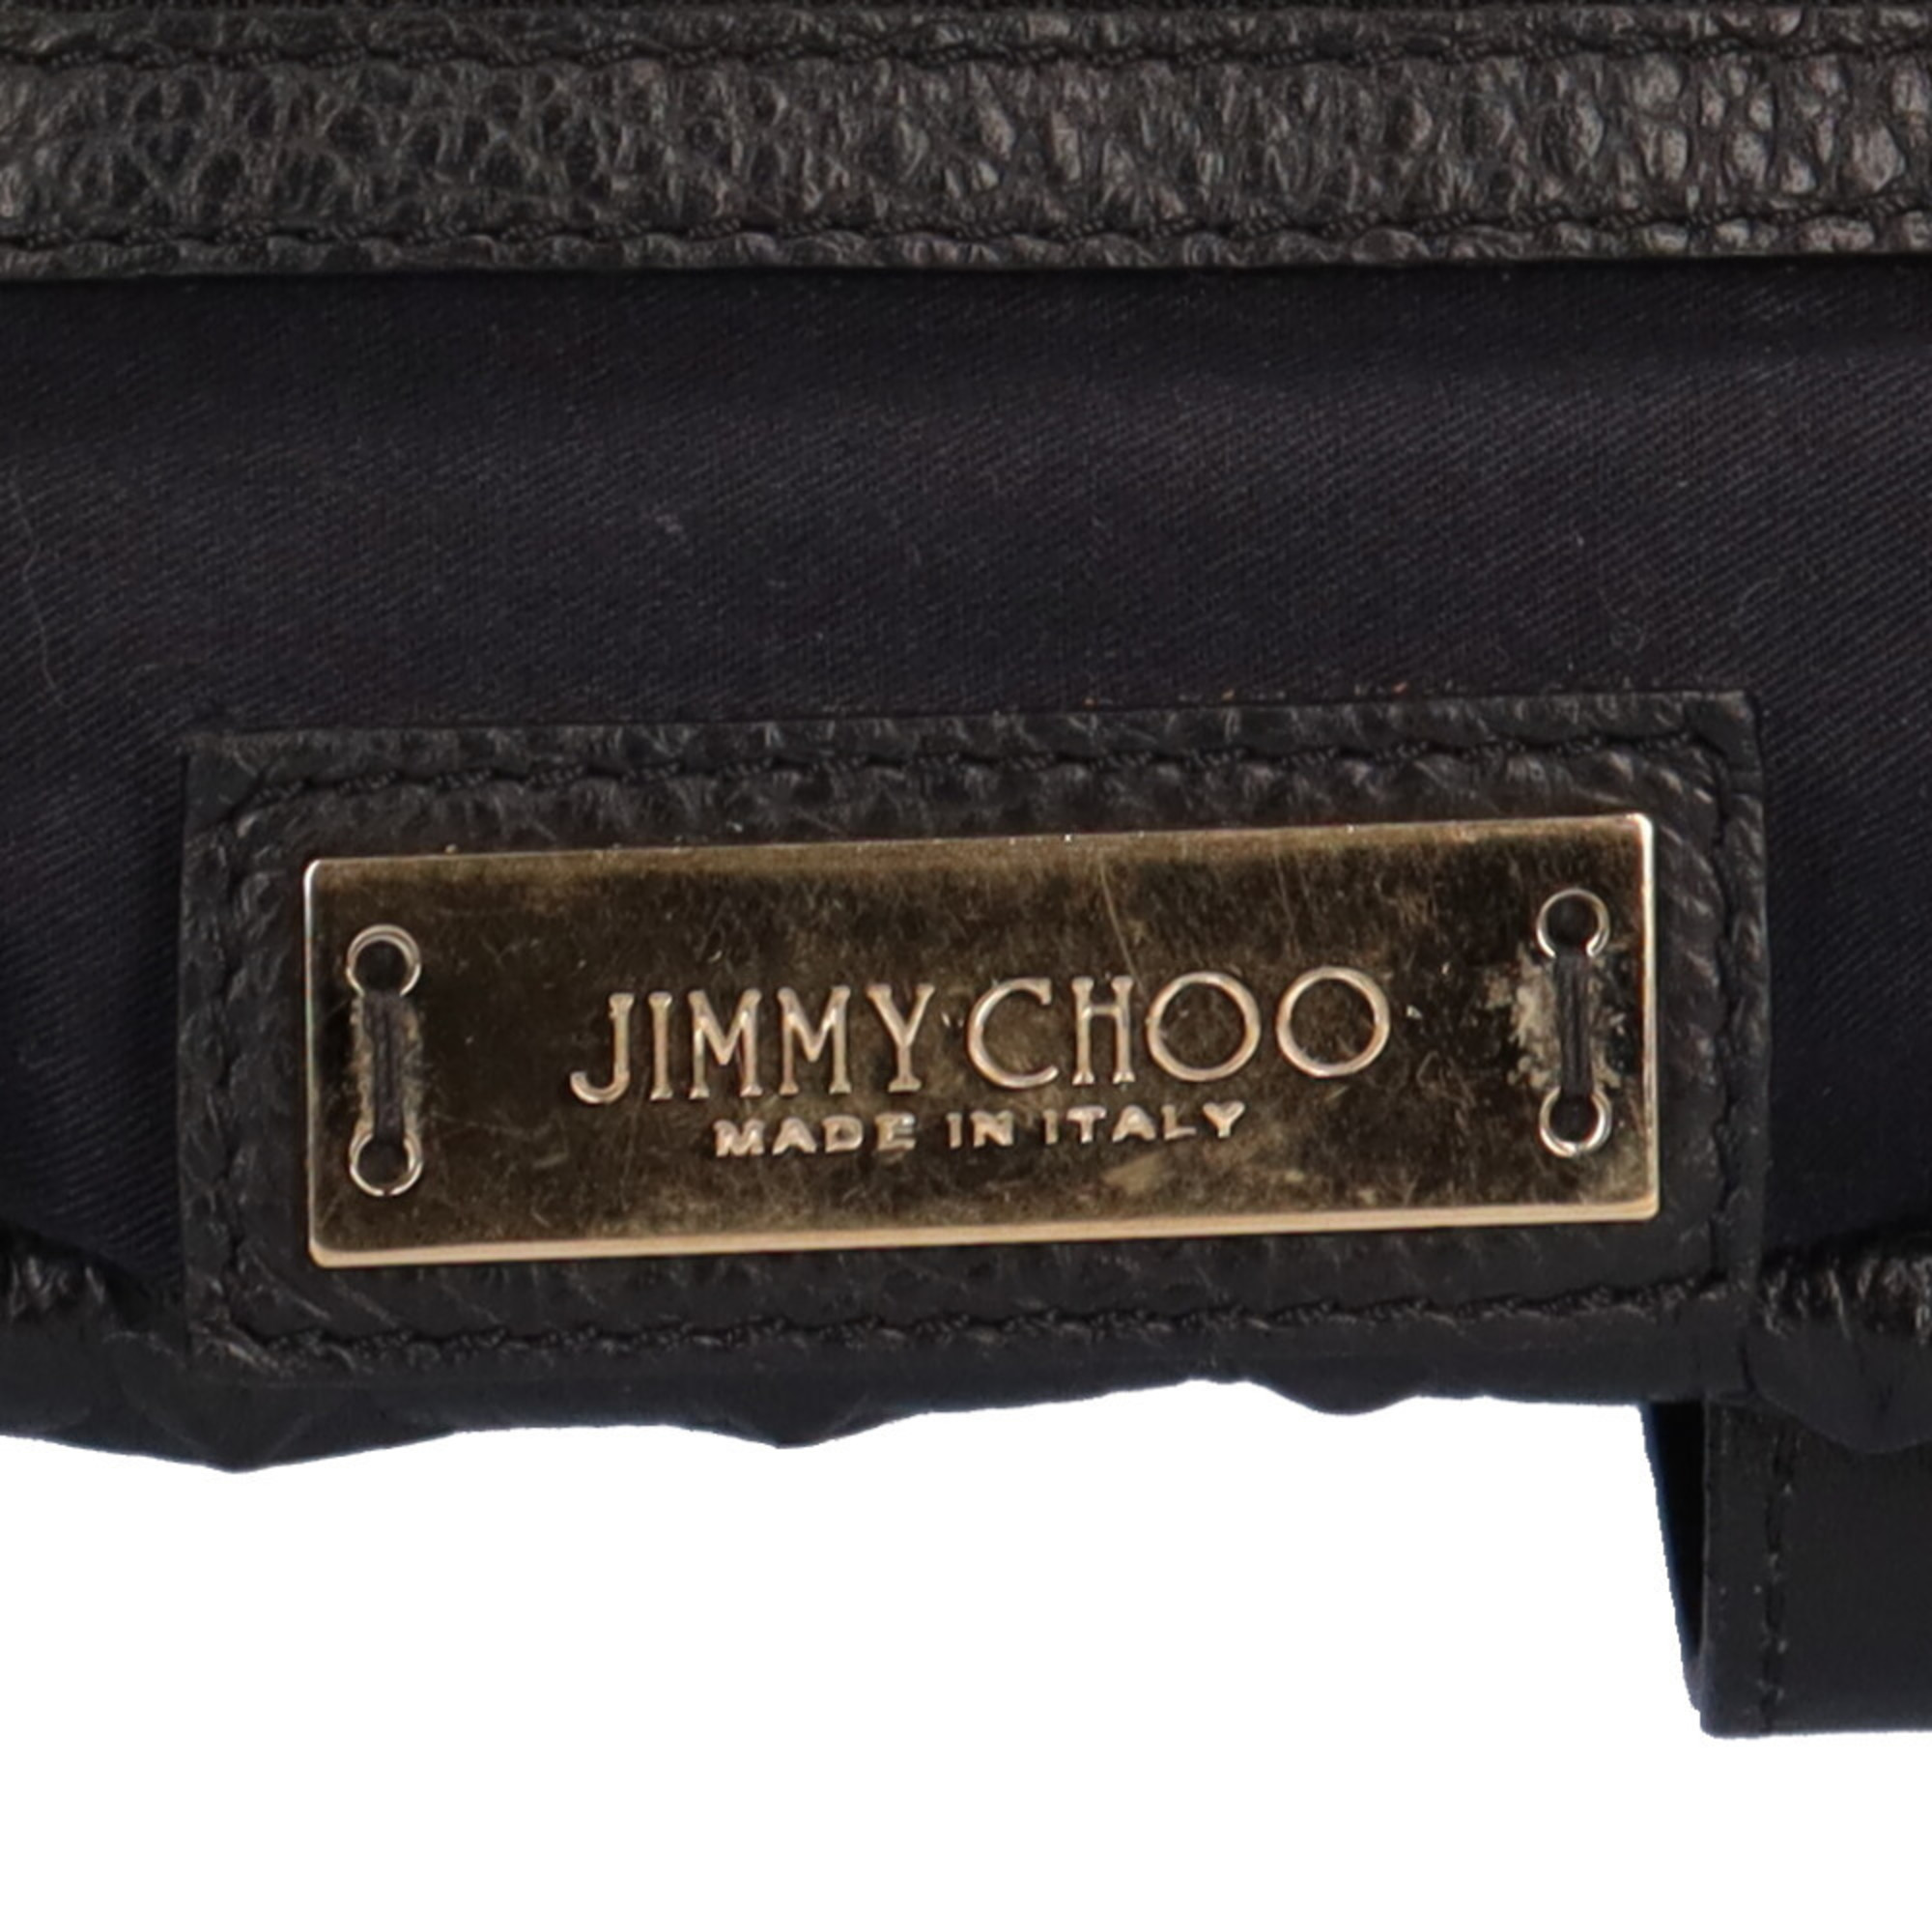 Jimmy Choo Sarah S embossed star tote bag leather black ladies